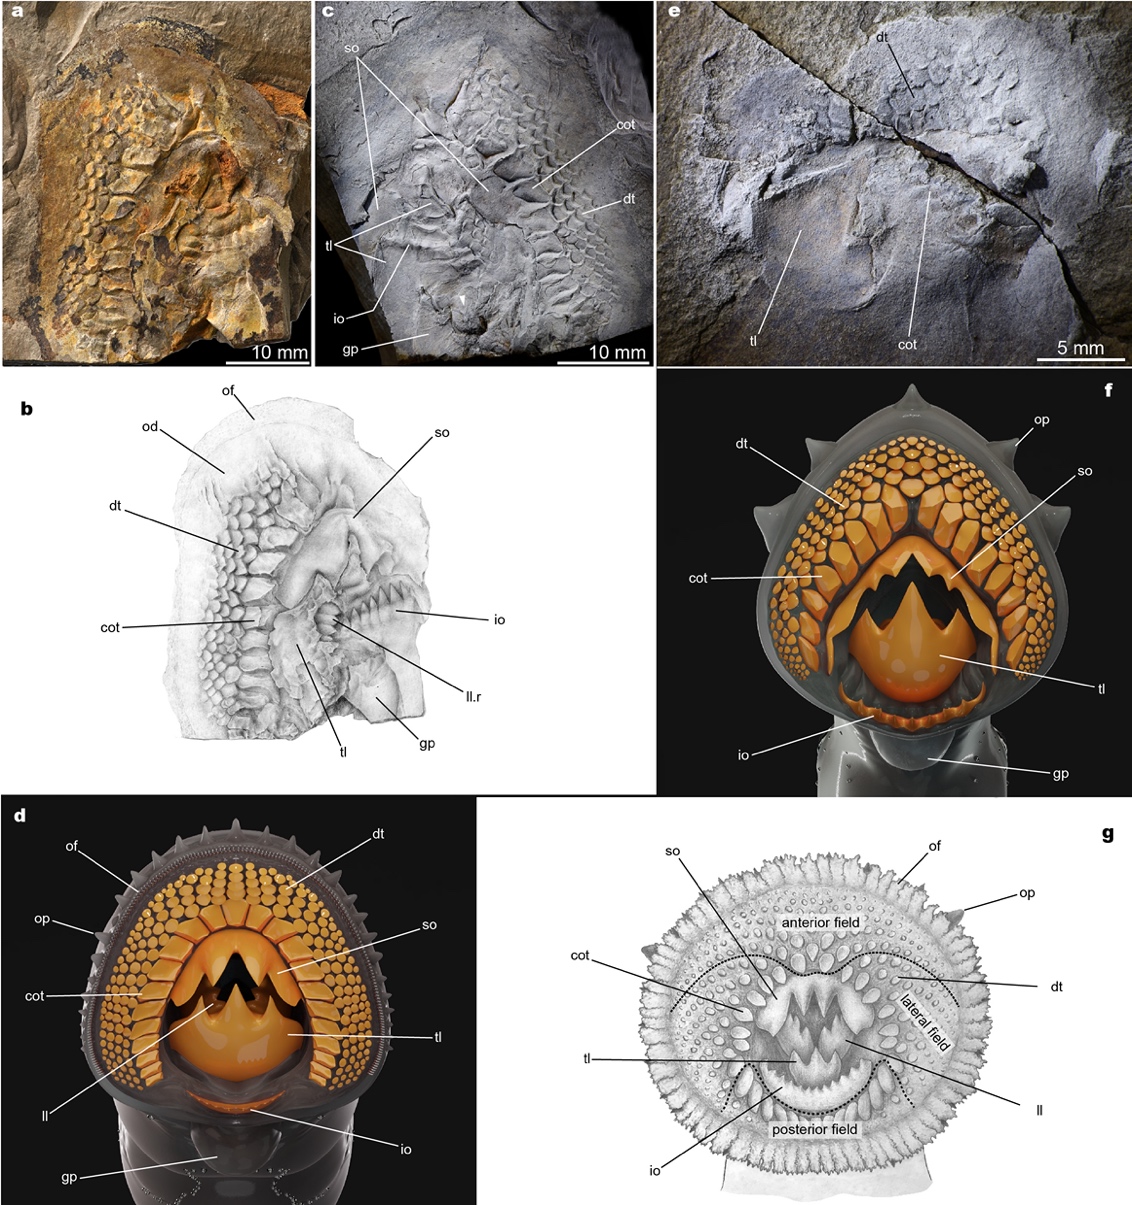 燕辽生物群发现七鳃鳗的侏罗纪食肉祖先